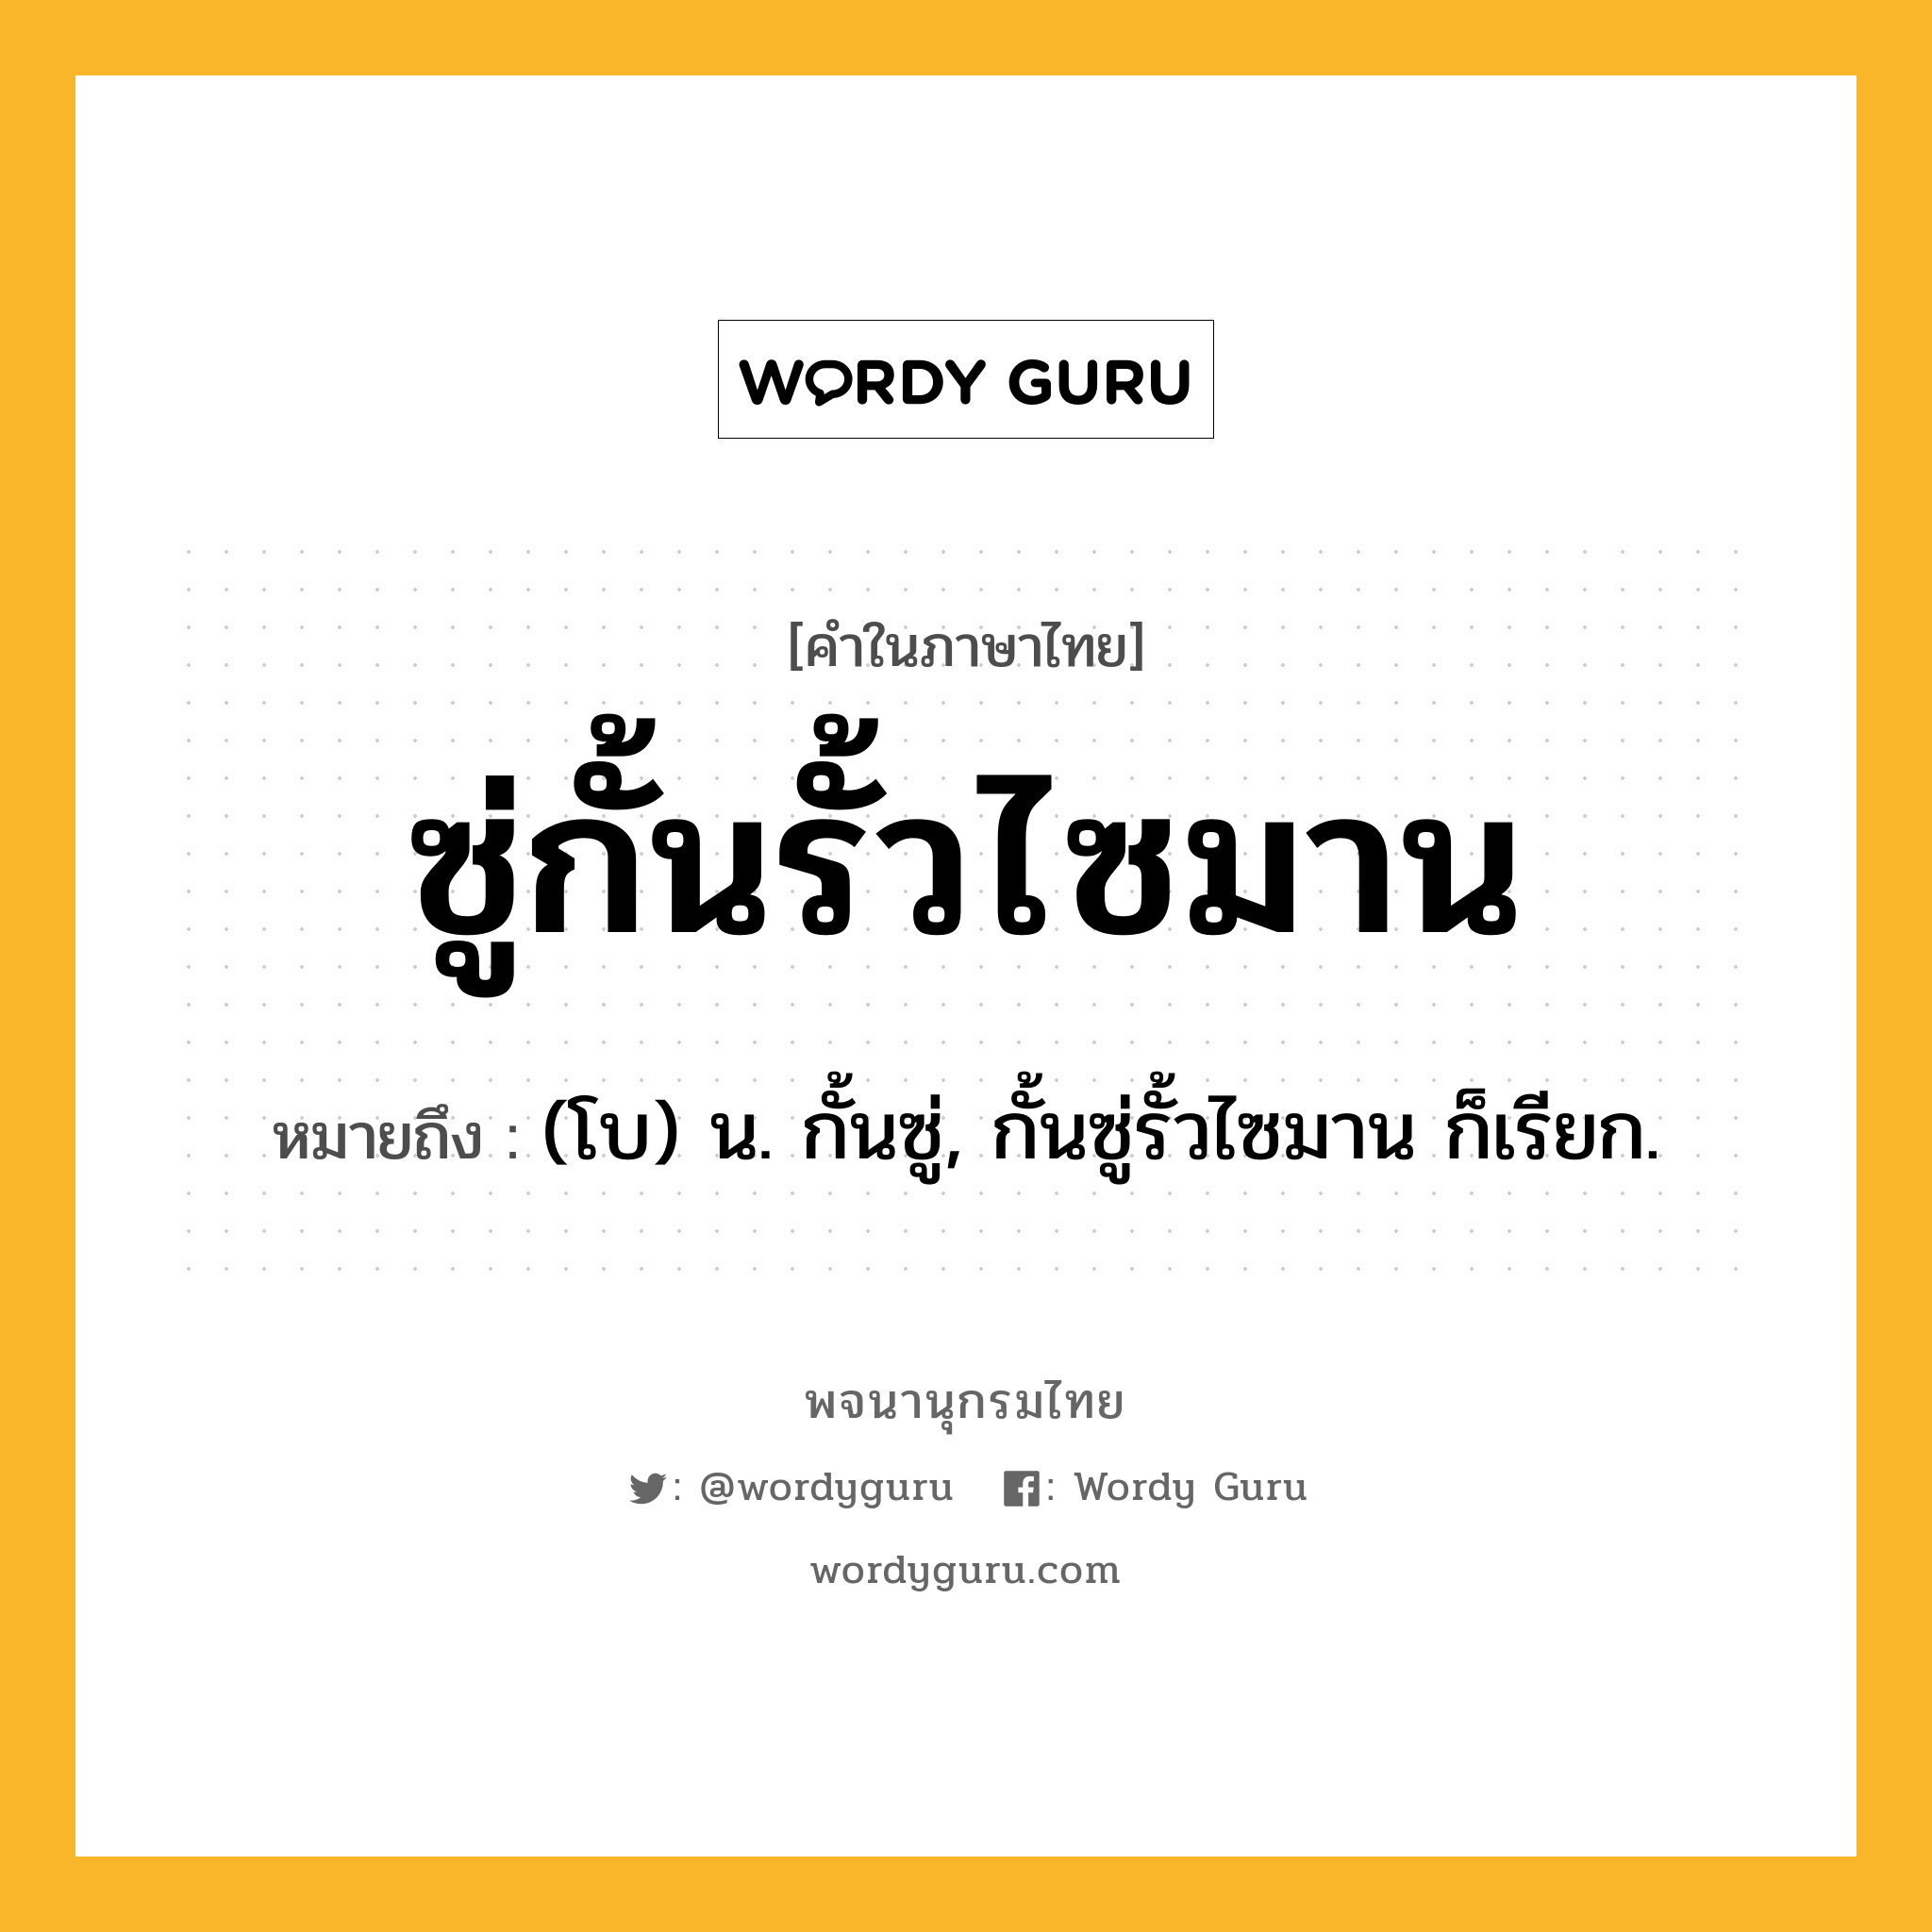 ซู่กั้นรั้วไซมาน หมายถึงอะไร?, คำในภาษาไทย ซู่กั้นรั้วไซมาน หมายถึง (โบ) น. กั้นซู่, กั้นซู่รั้วไซมาน ก็เรียก.